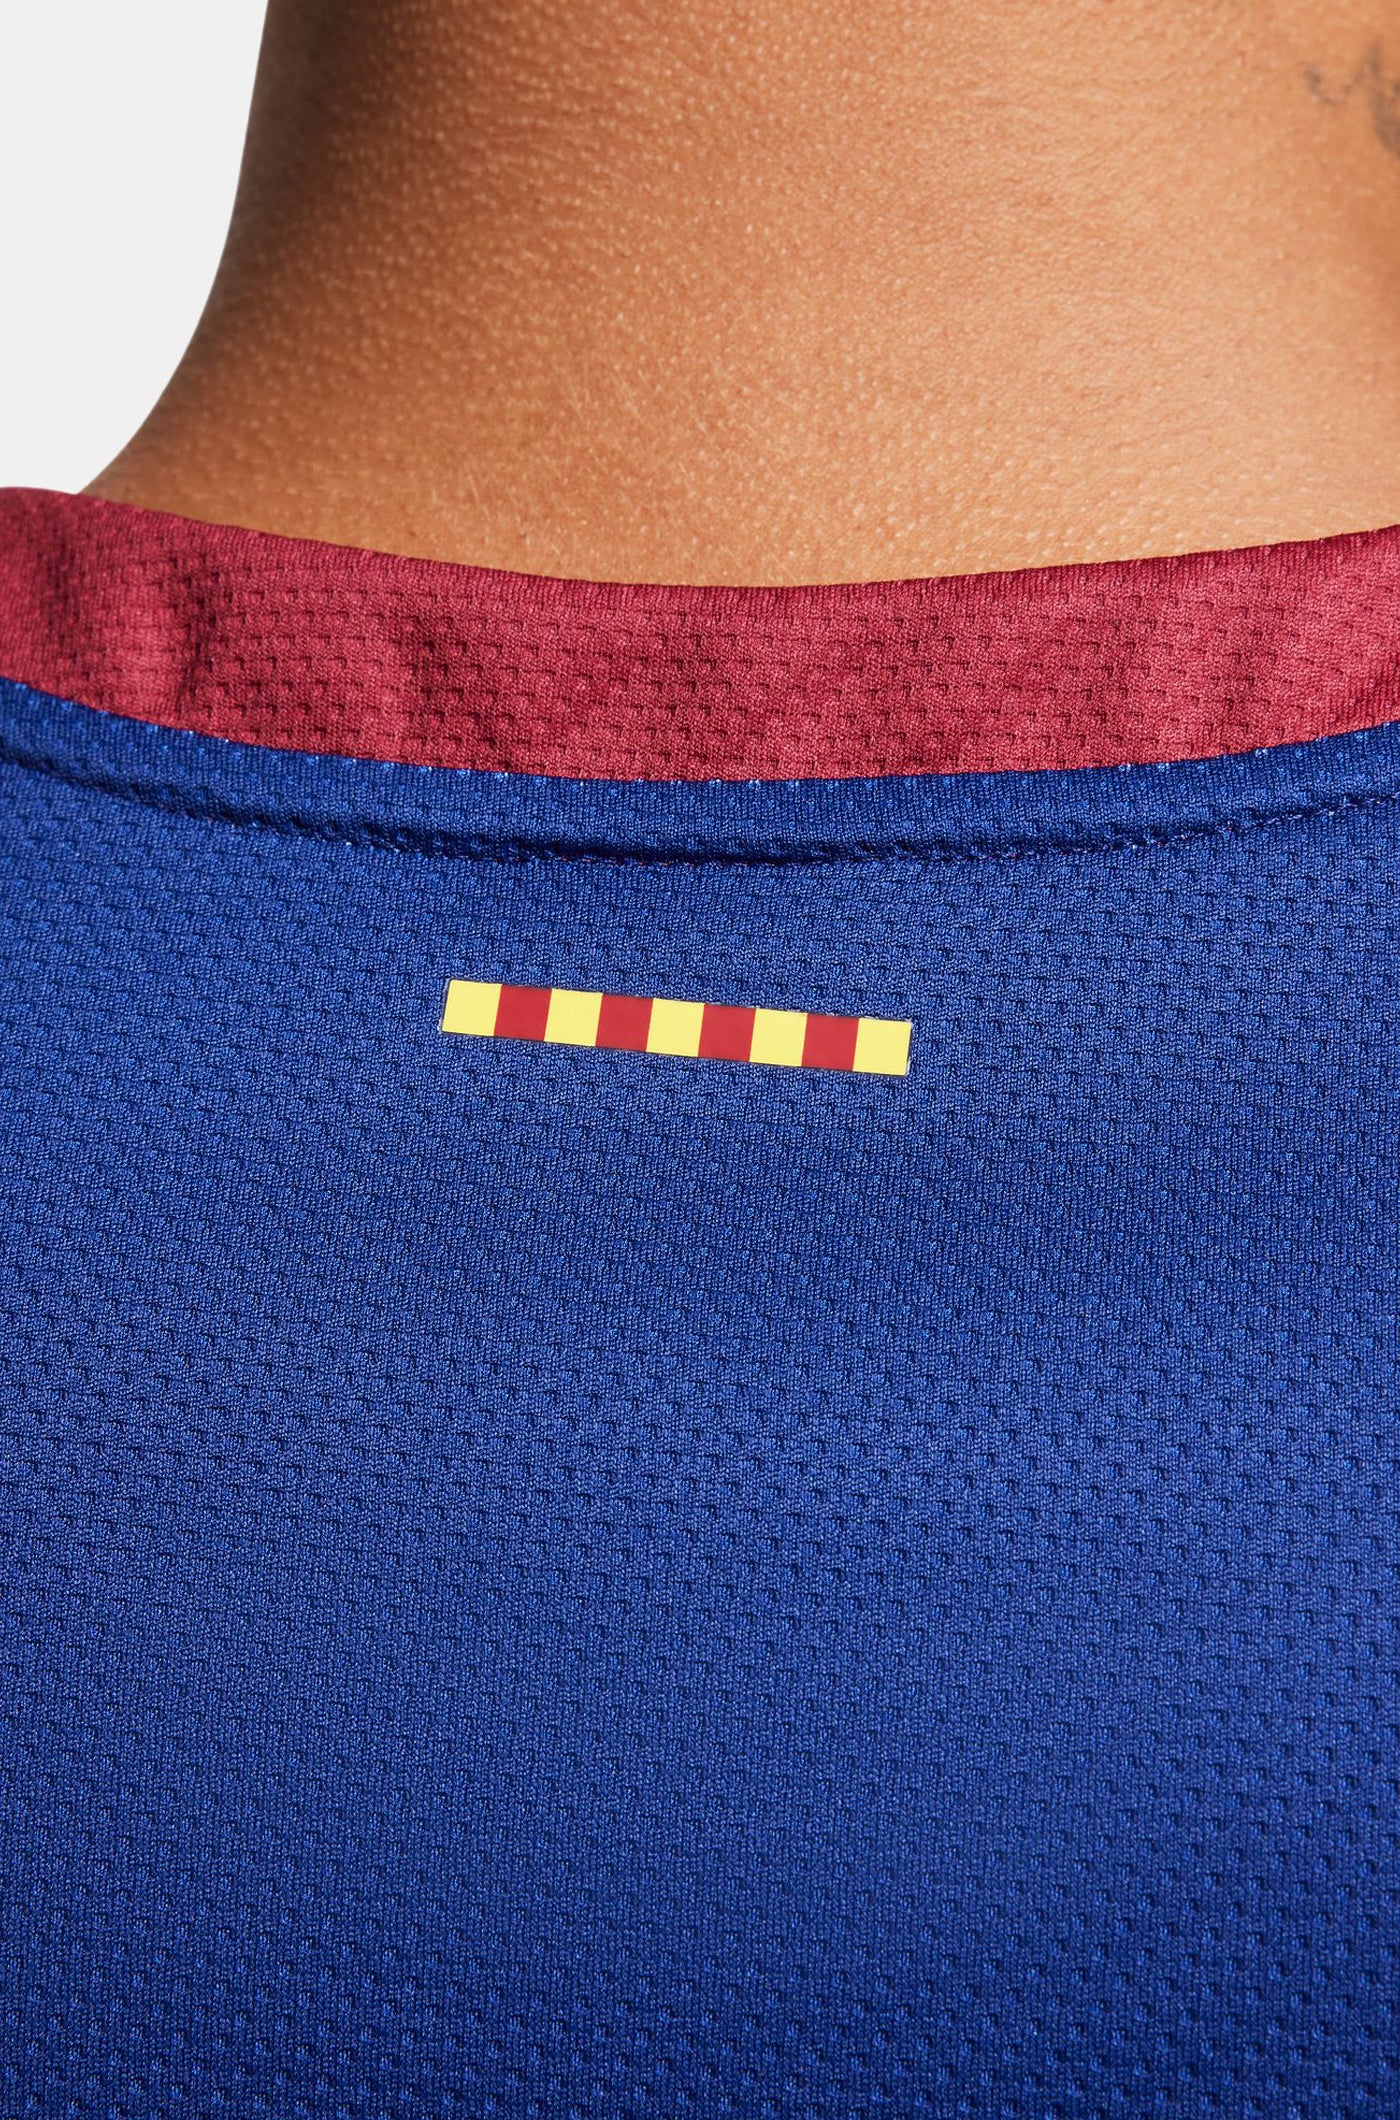 Euroleague FC Barcelona home basketball shirt 23/24 - DA SILVA